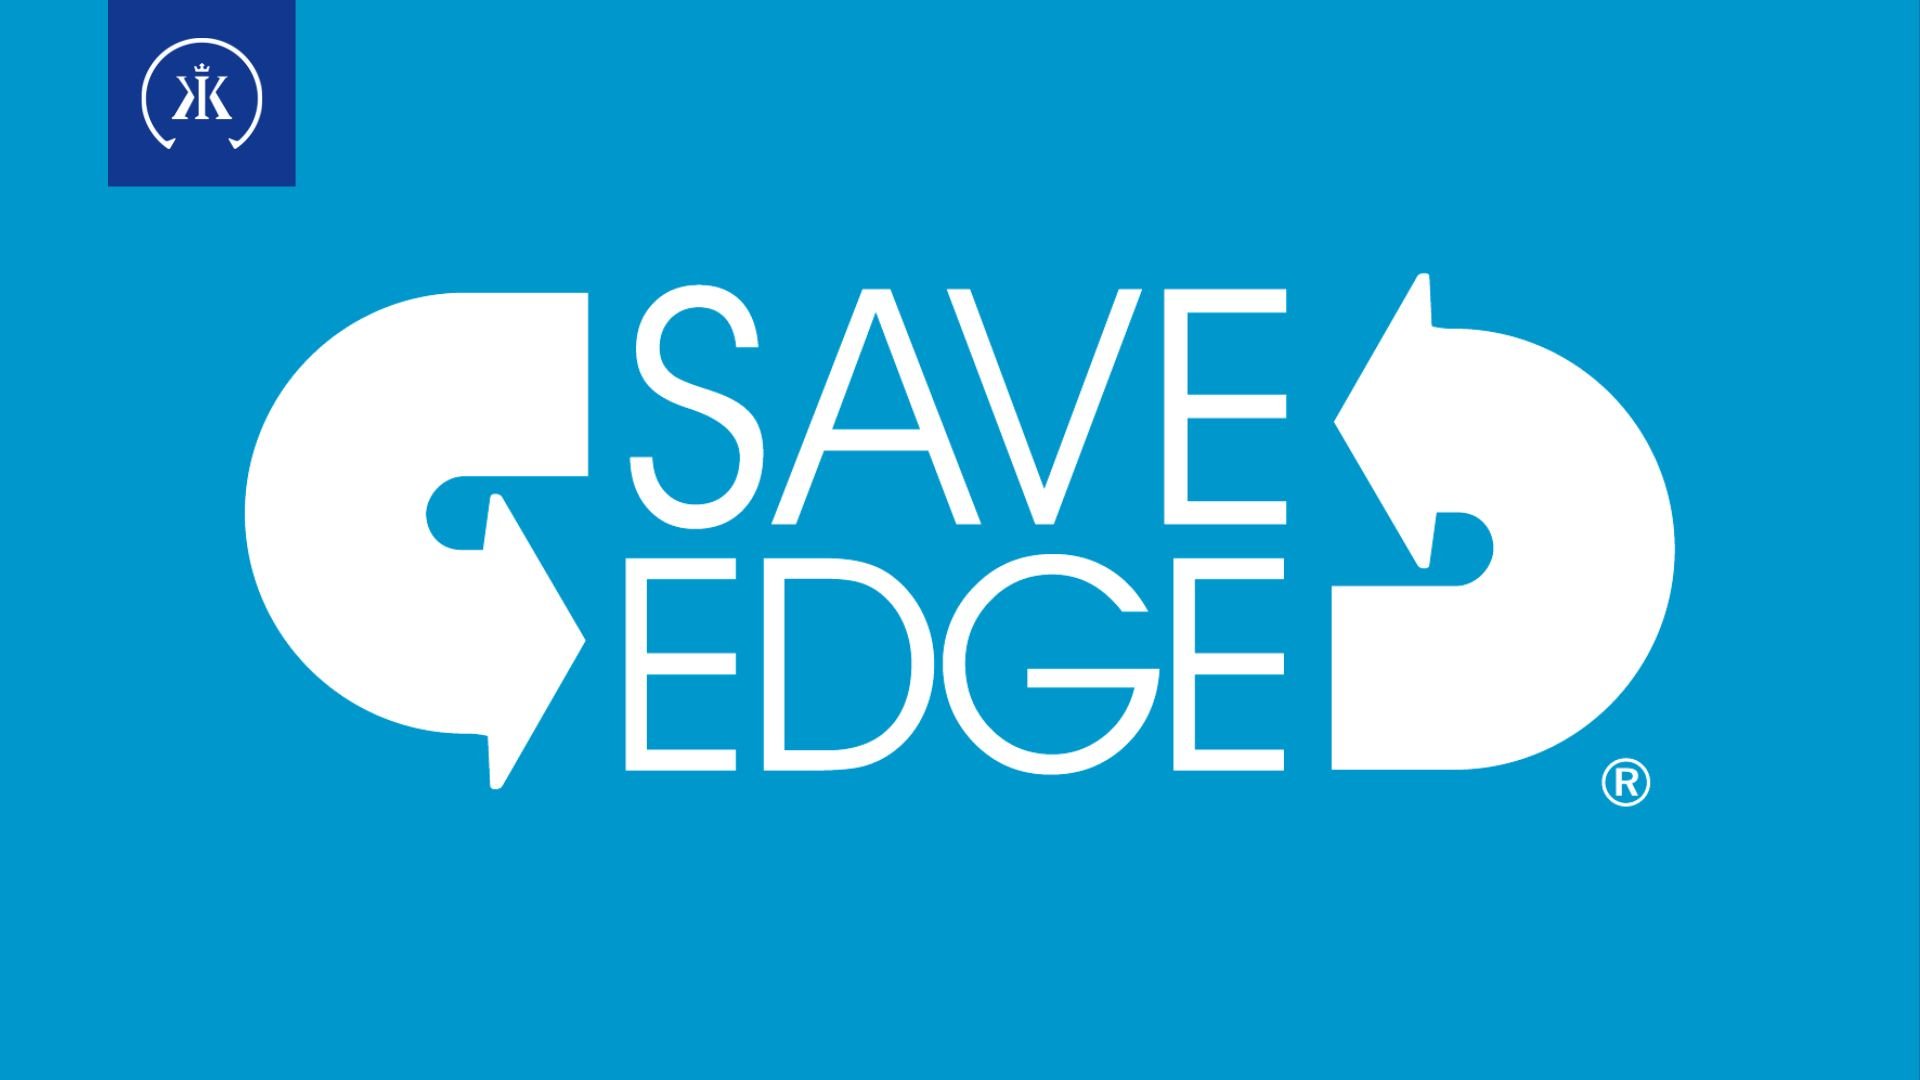 Save Edge is nu deel van de Kerckhaert Group